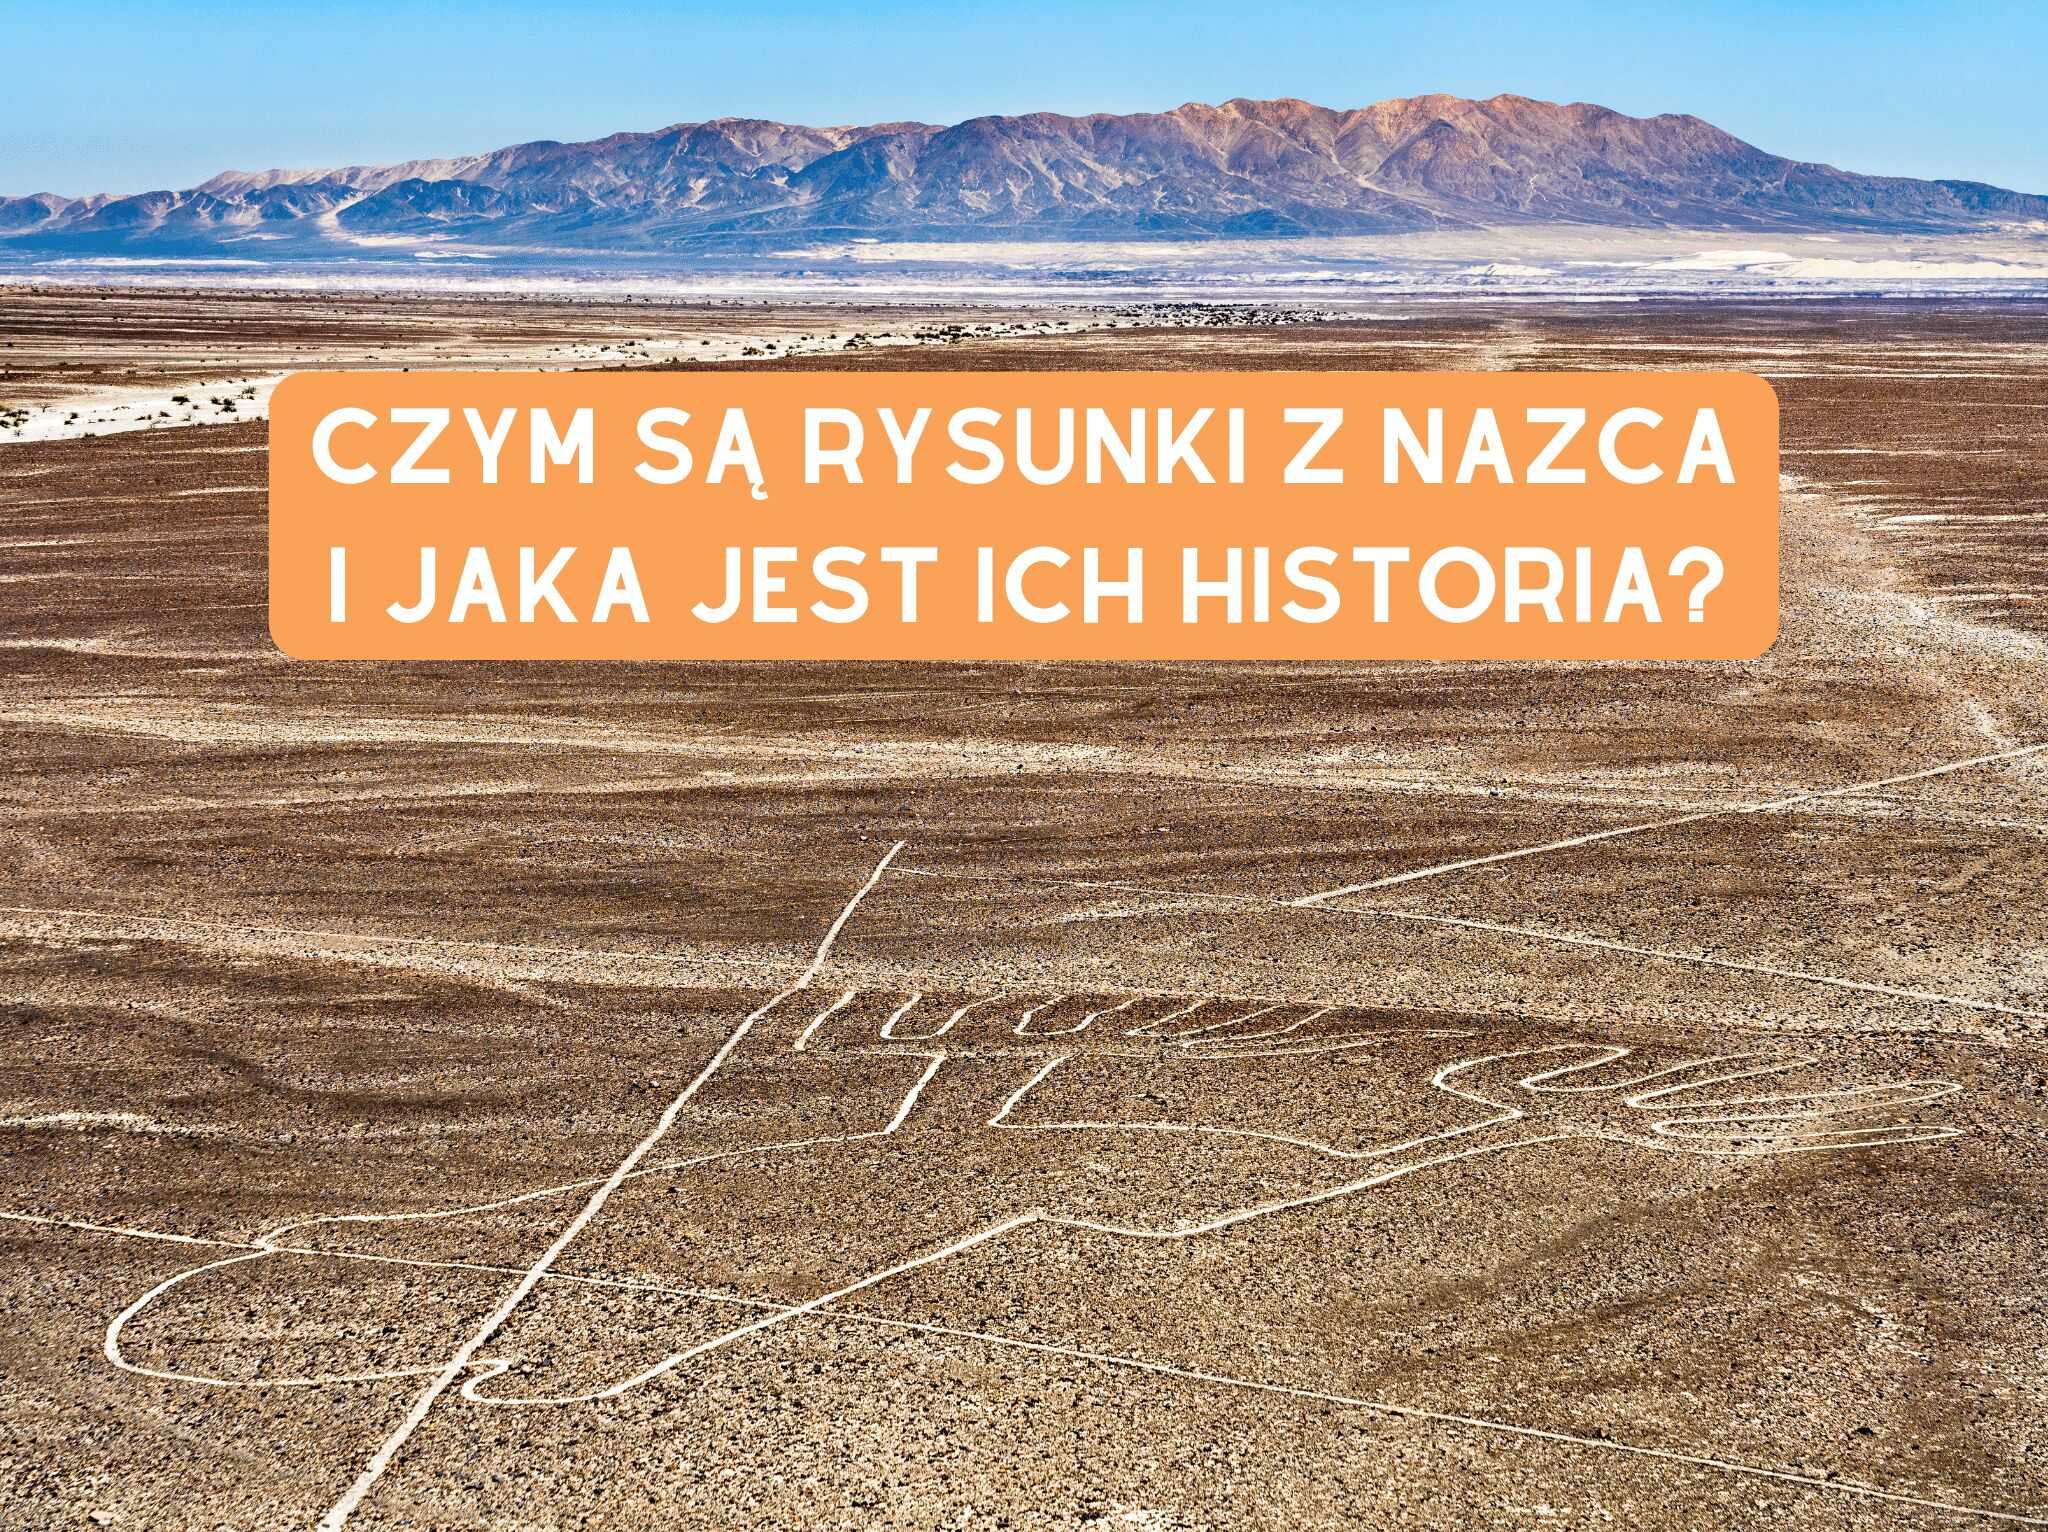 Czym są rysunki z Nazca i jaka jest ich historia? - blog 4challenge